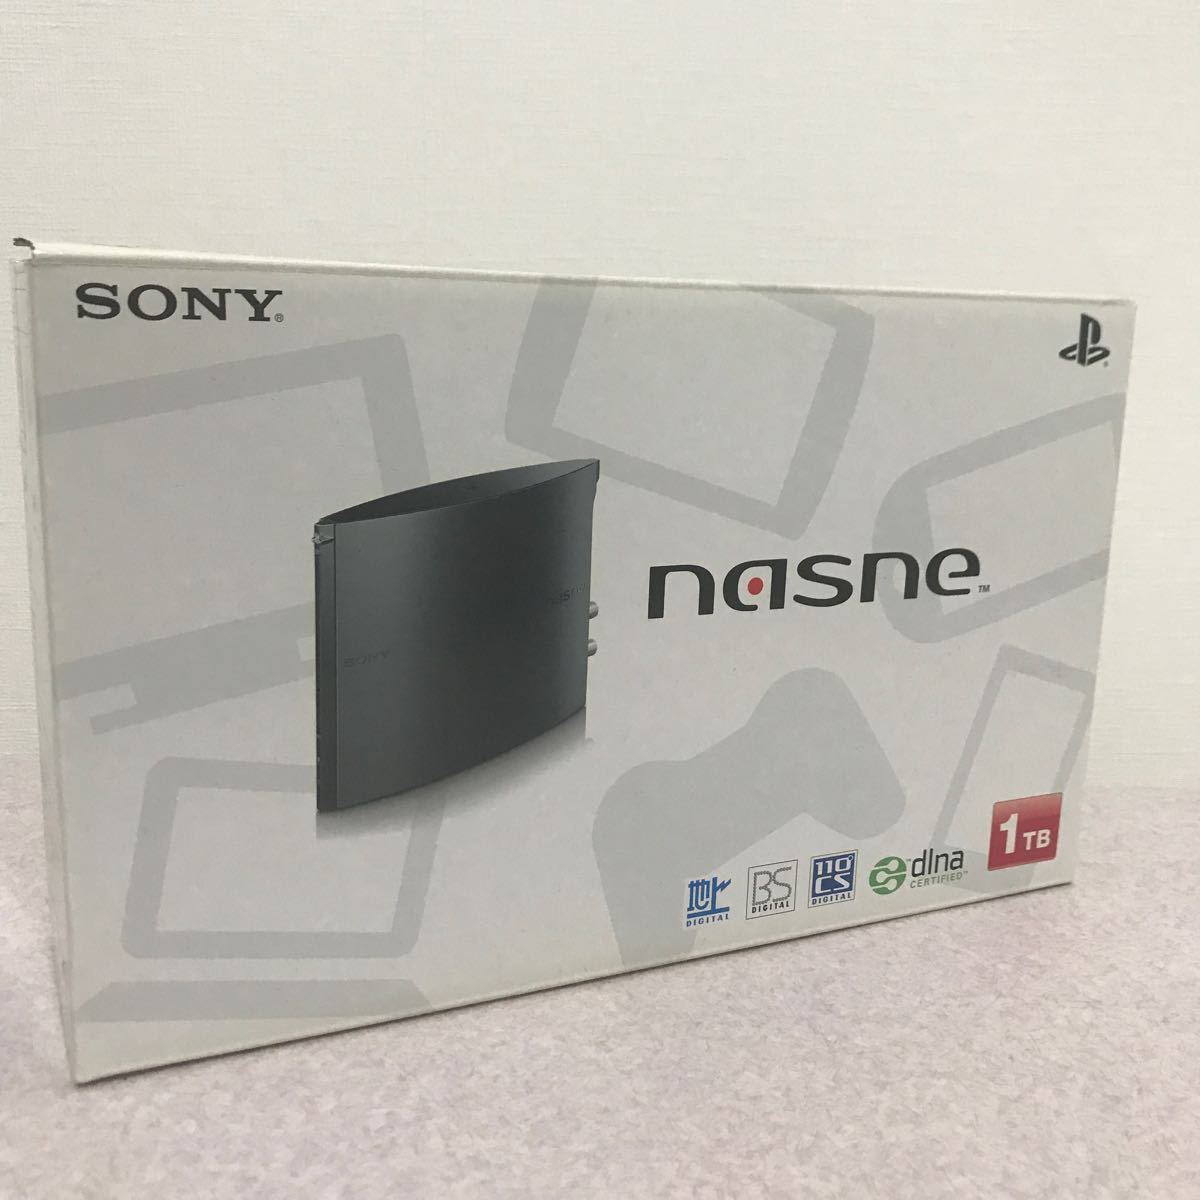 【極美品】nasne ナスネ SONY ソニー HDD 1TB メディアストレージ ネットワークレコーダー _画像1